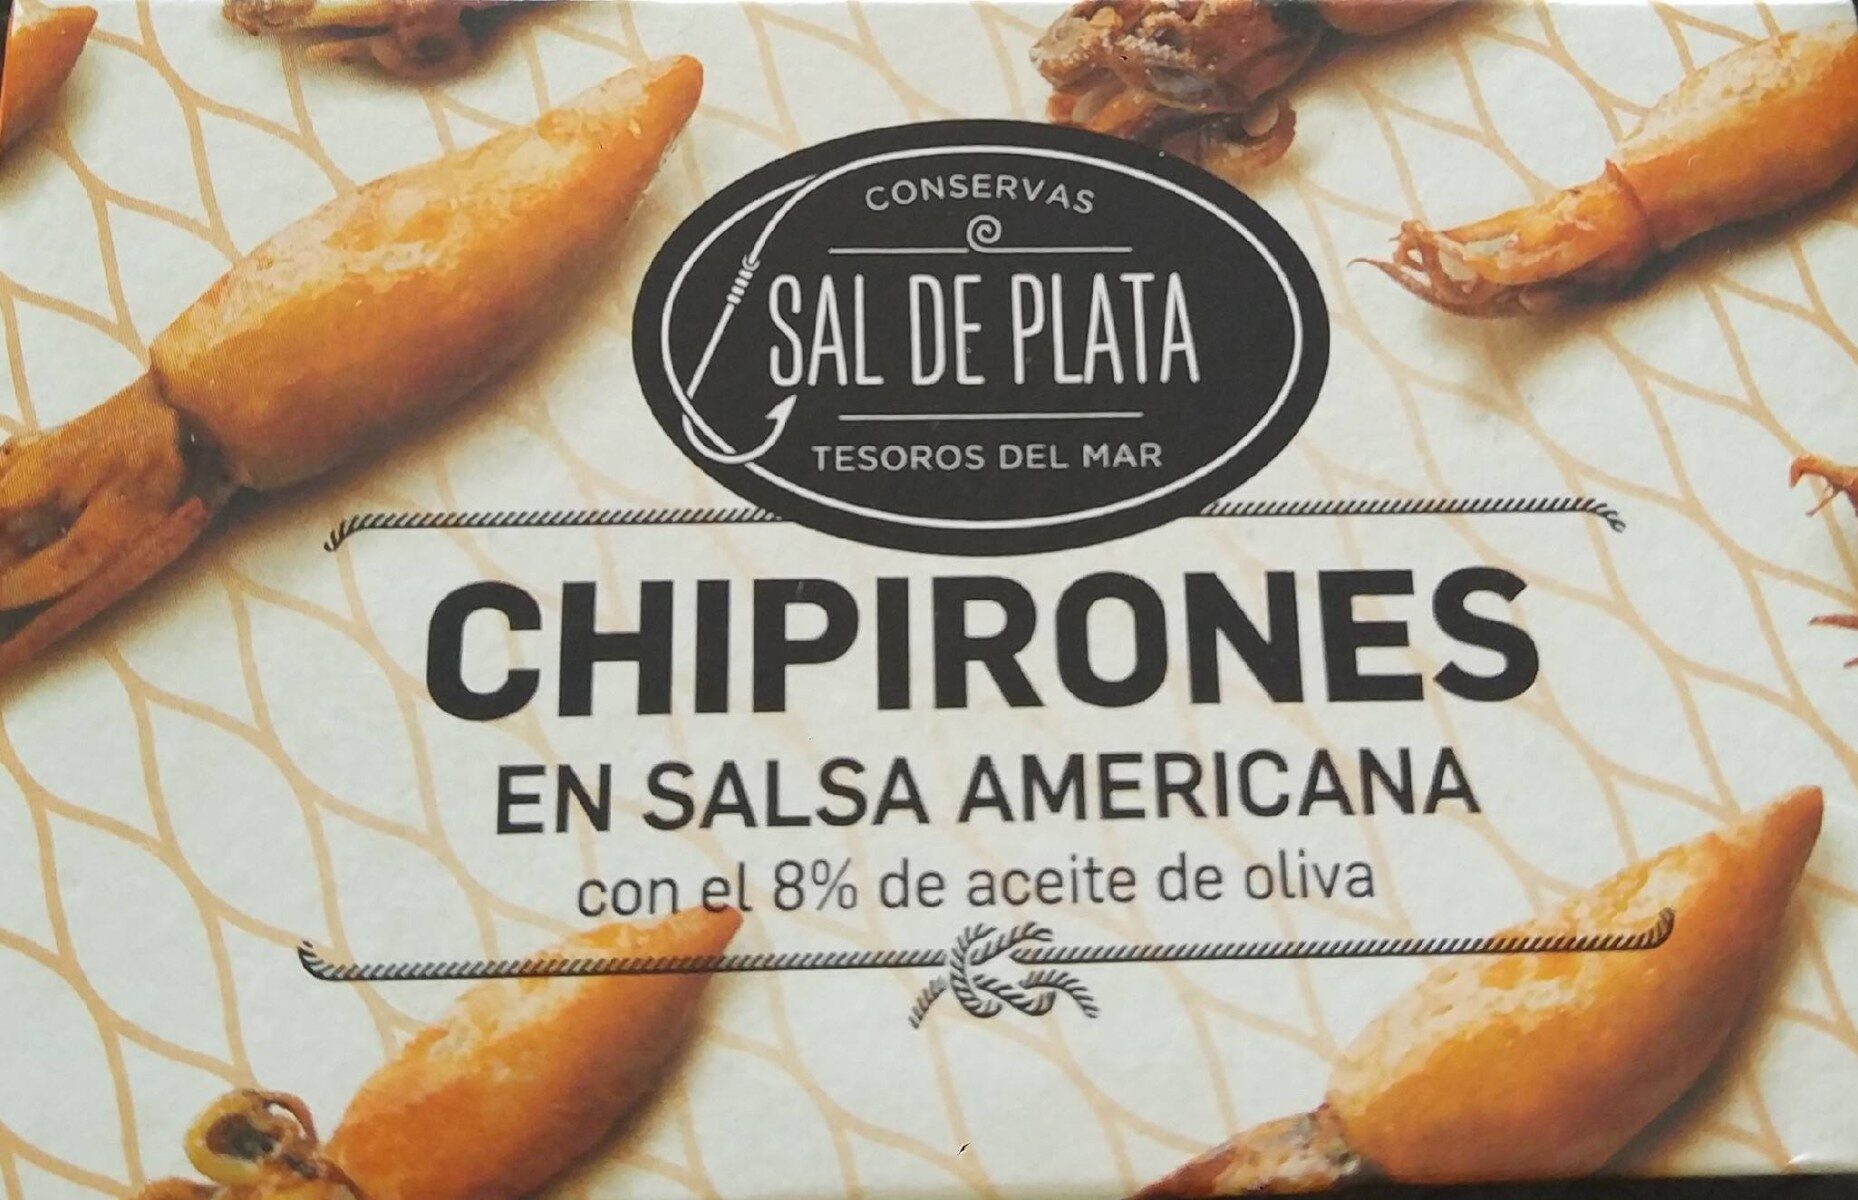 Chipirones en salsa americana - Product - es